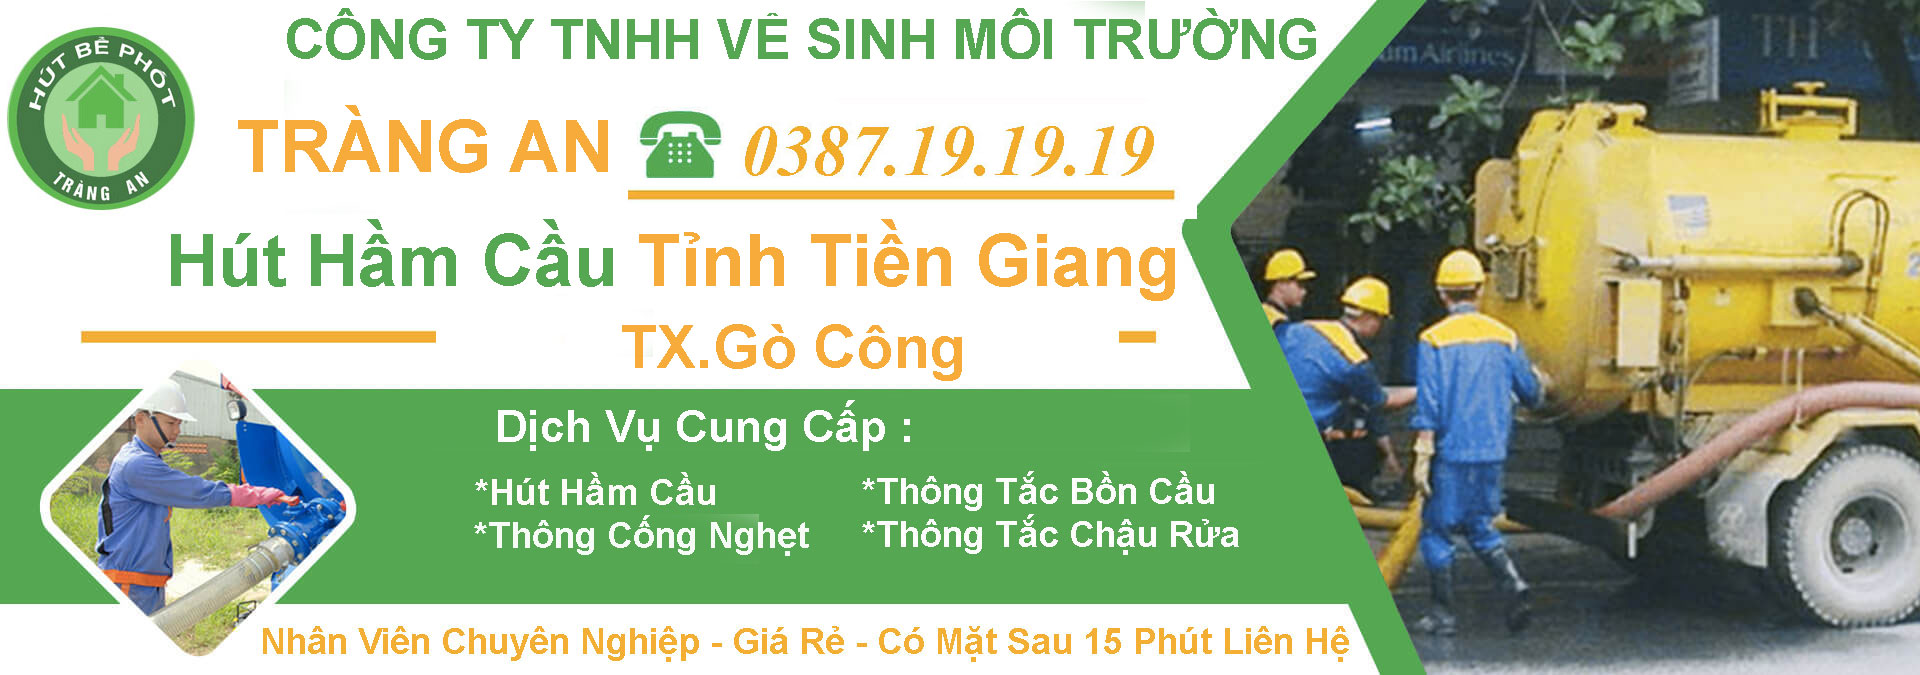 Hut Ham Cau Tinh Tien Giang Go Cong